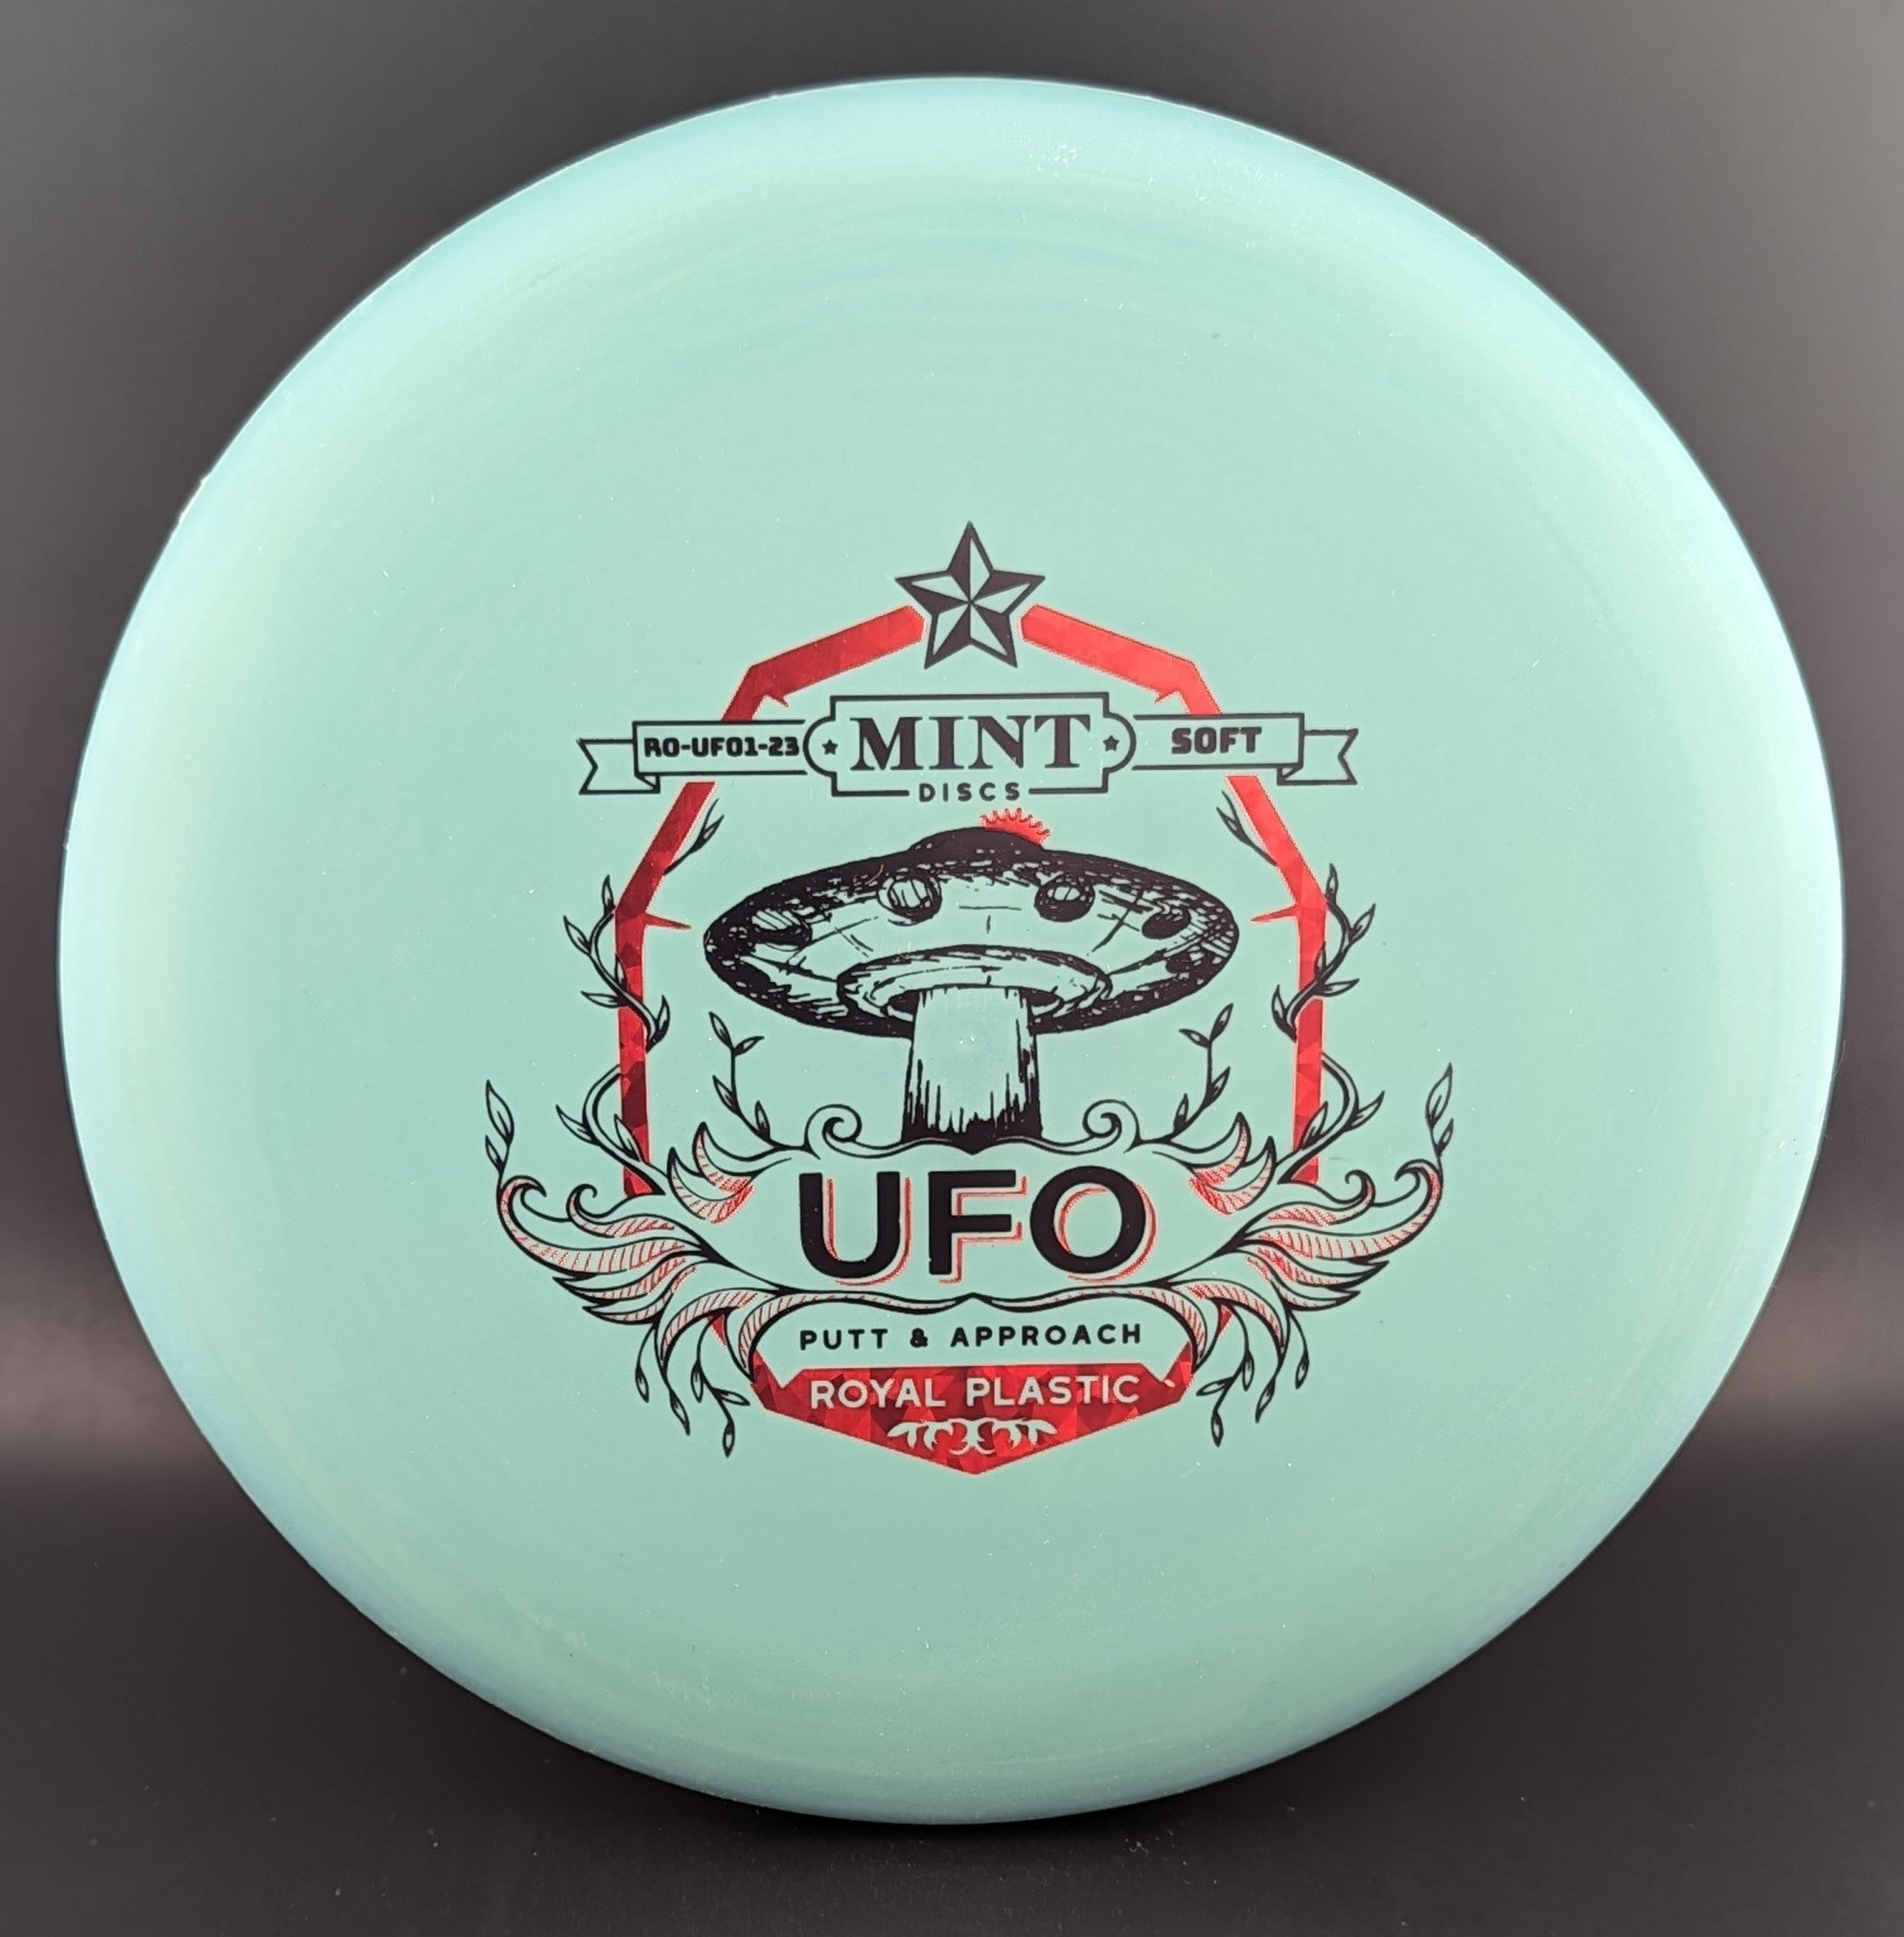 Mint Discs Royal UFO Soft-2